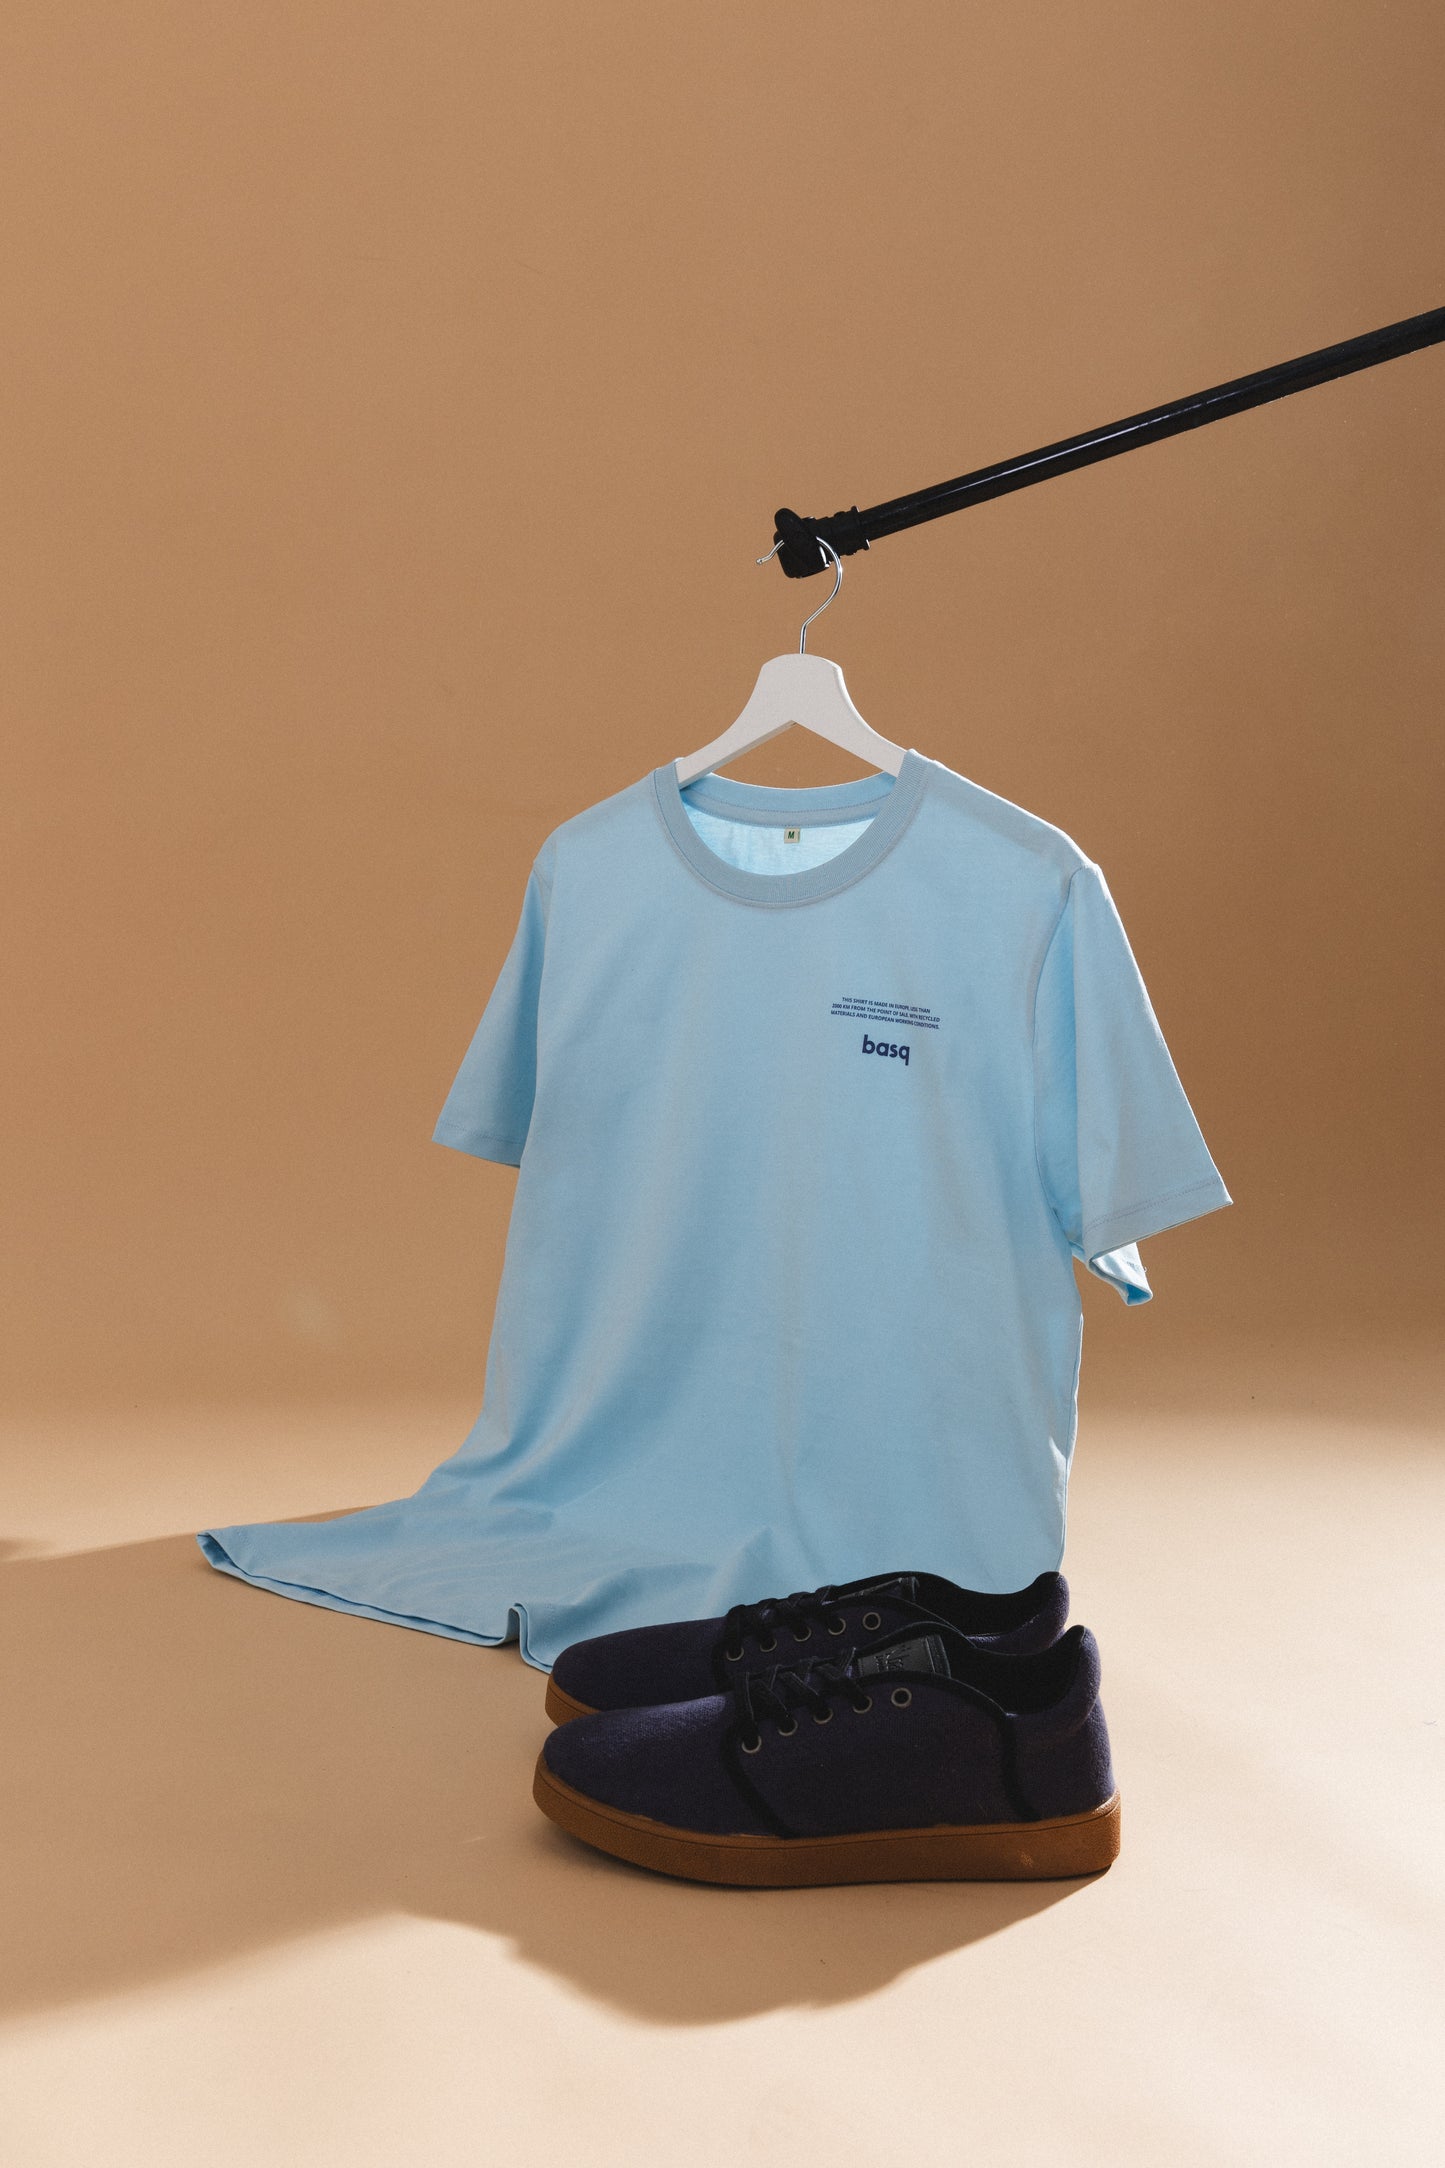 basq T-Shirt - light blue